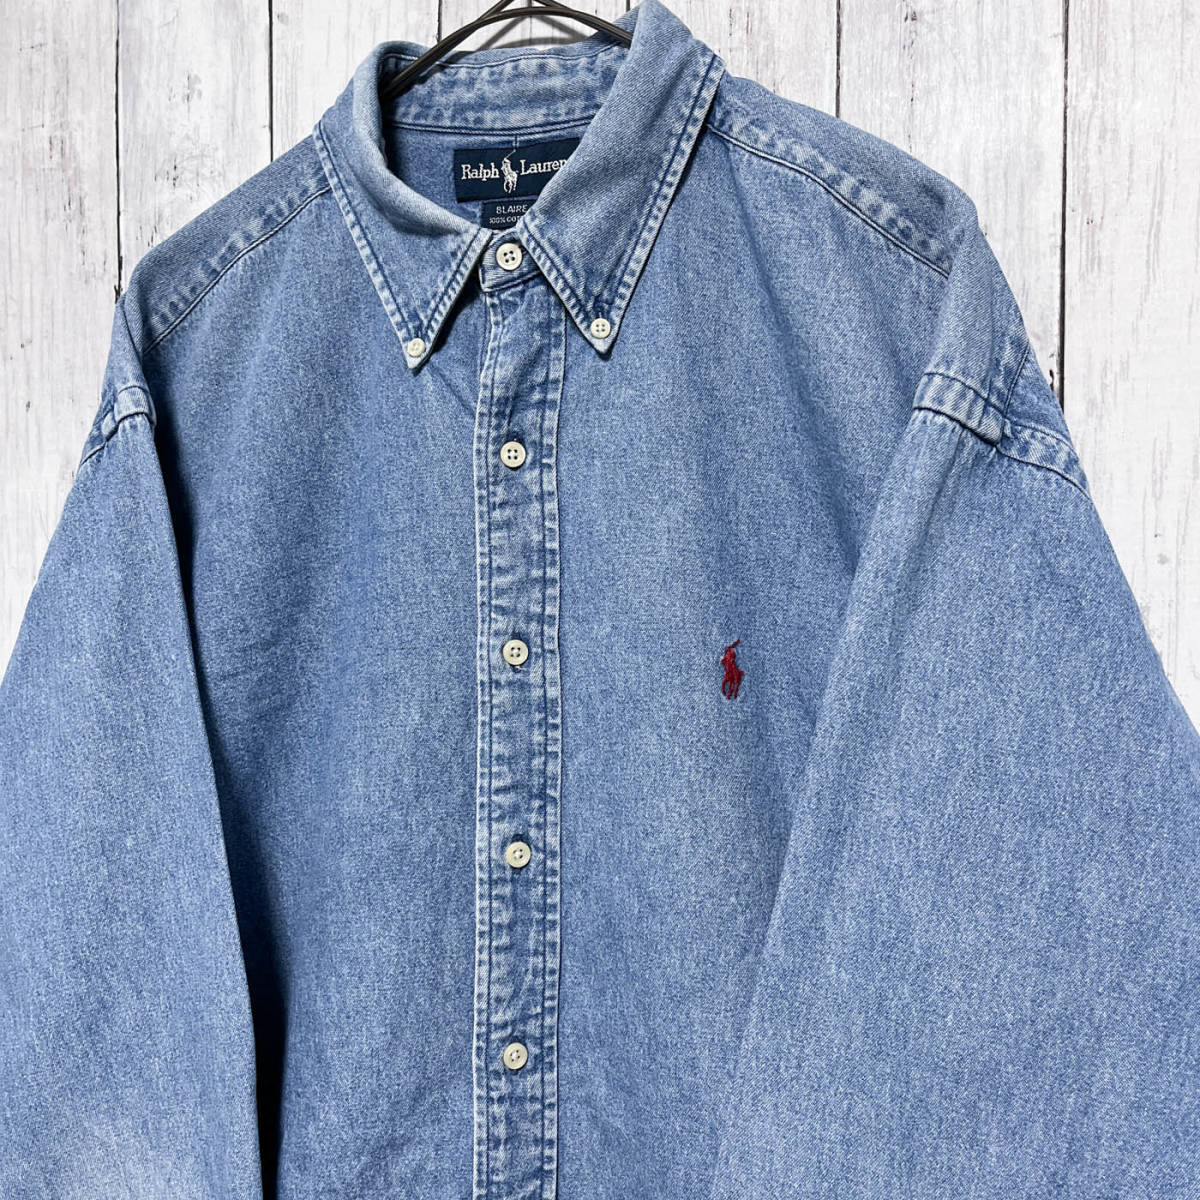  Ralph Lauren Ralph Lauren BLAIRE Denim рубашка рубашка с длинным рукавом мужской one отметка хлопок 100% XL размер 5-277